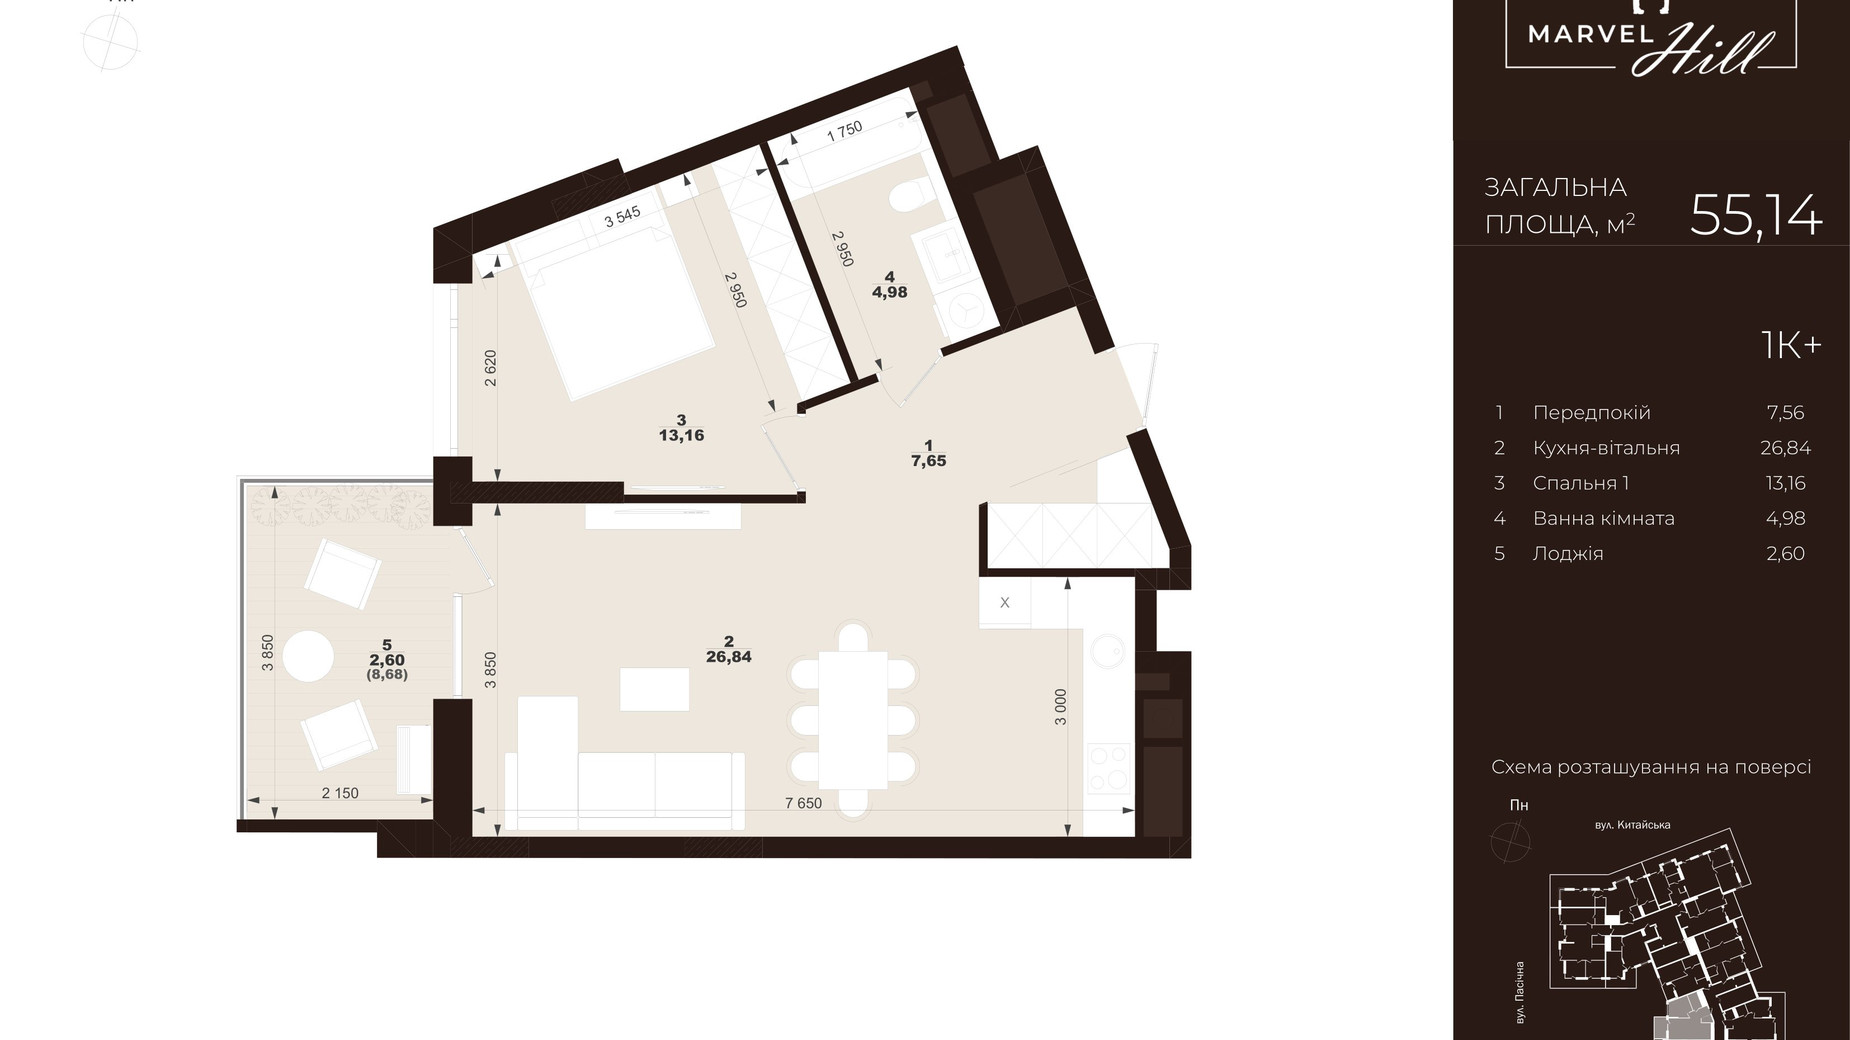 Планировка 1-комнатной квартиры в ЖК Marvel Hill 55.14 м², фото 691444